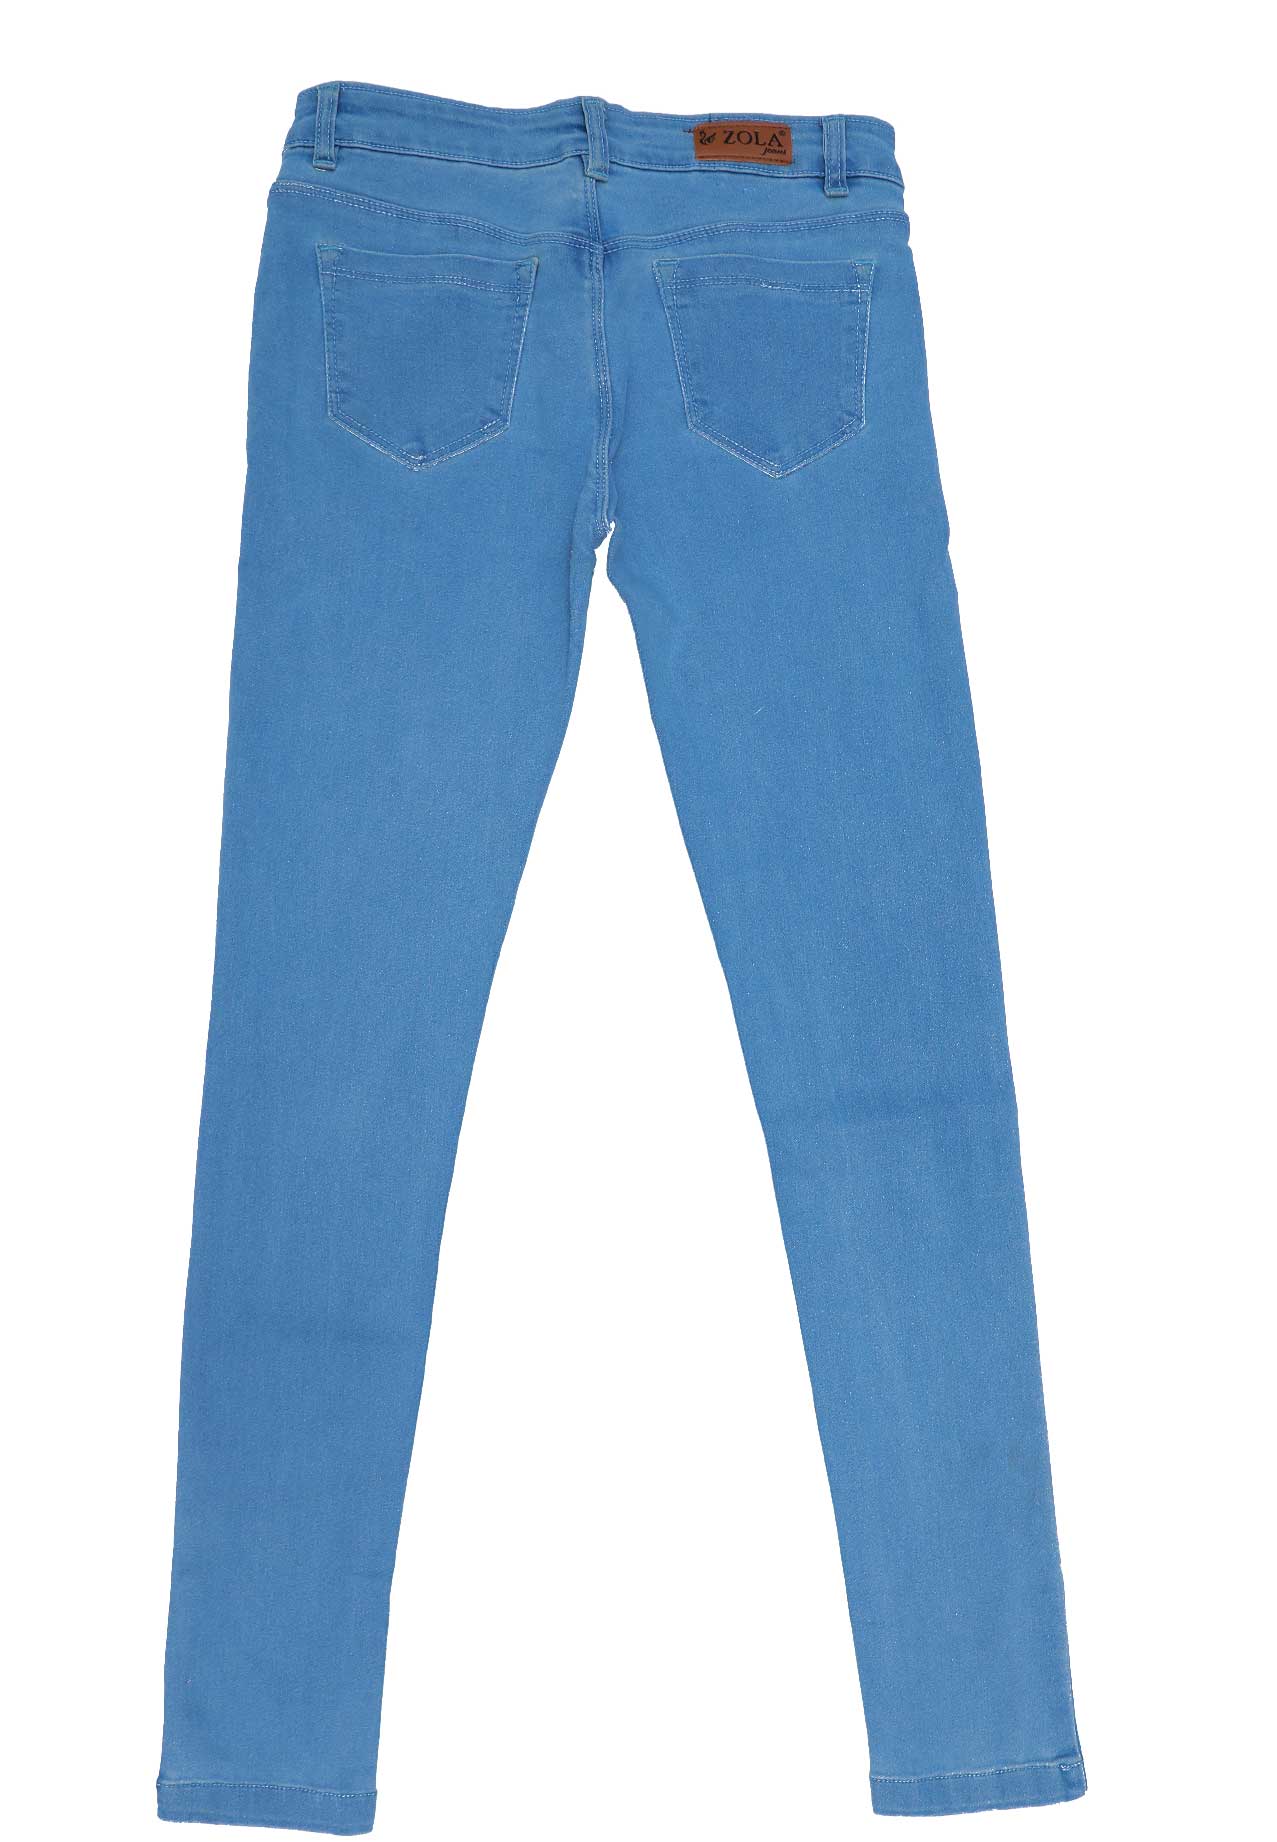 zola jeans online